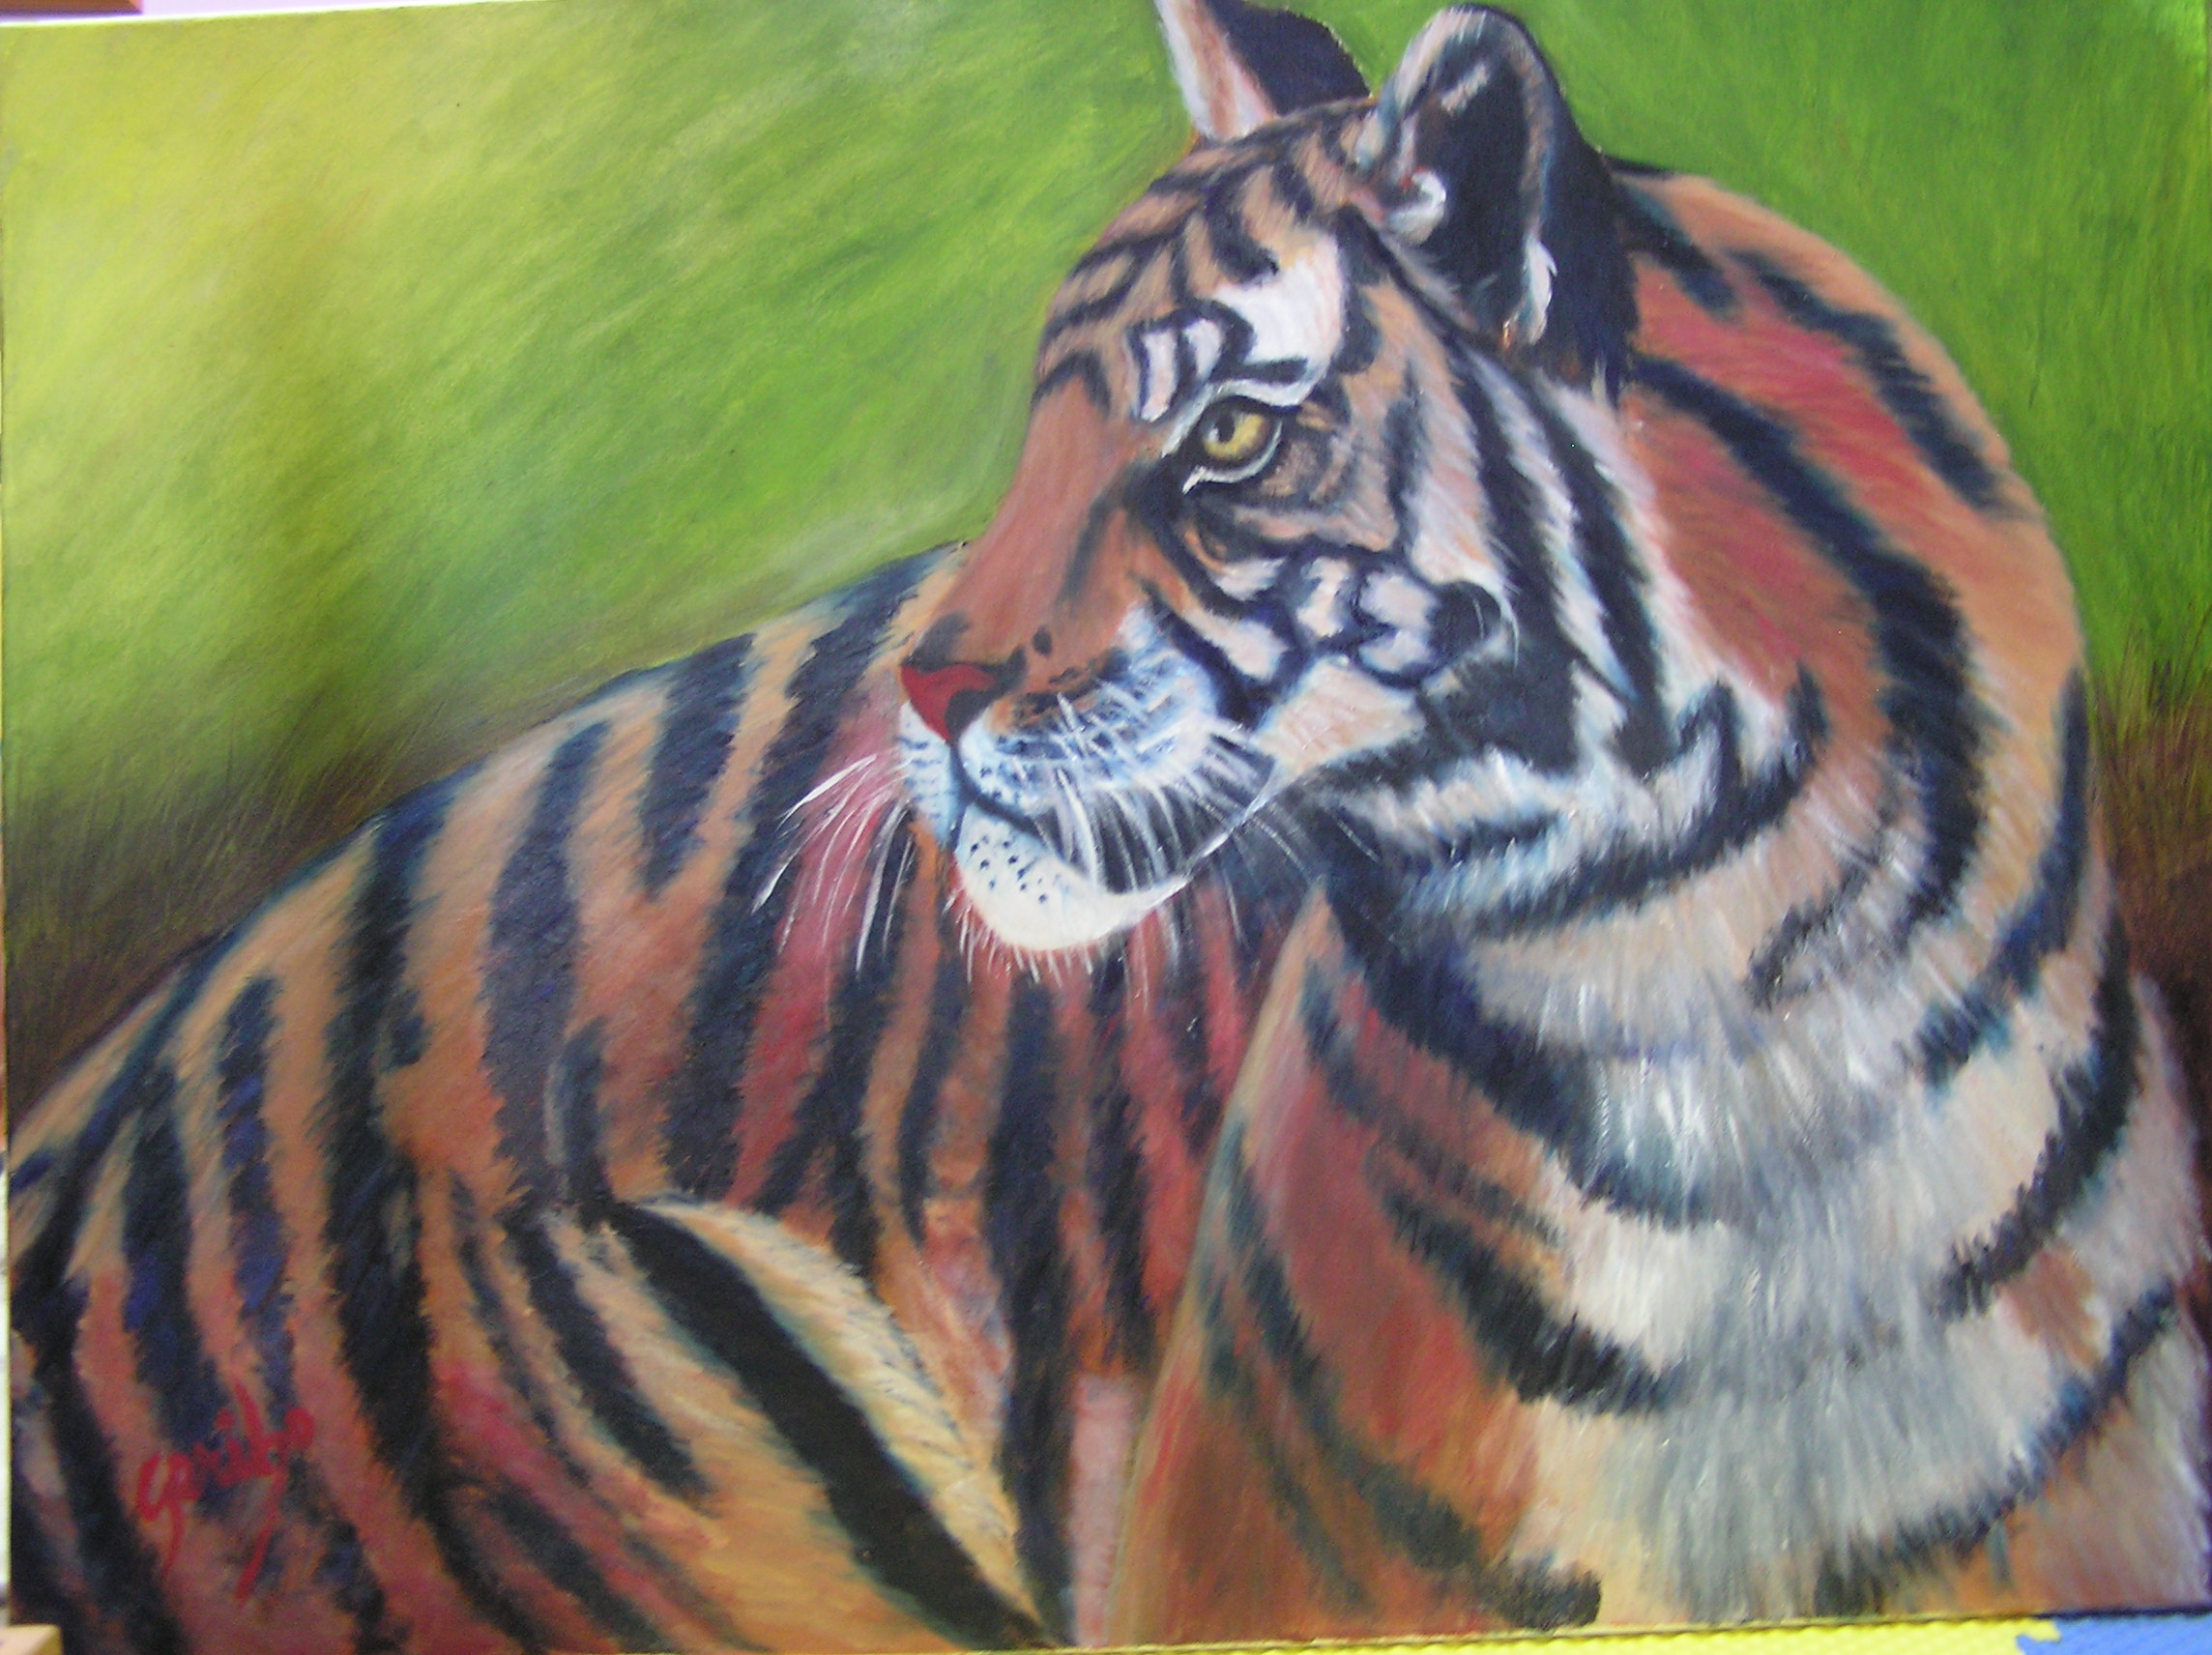 Tiger, Tiger painting by artist DJ Geribo